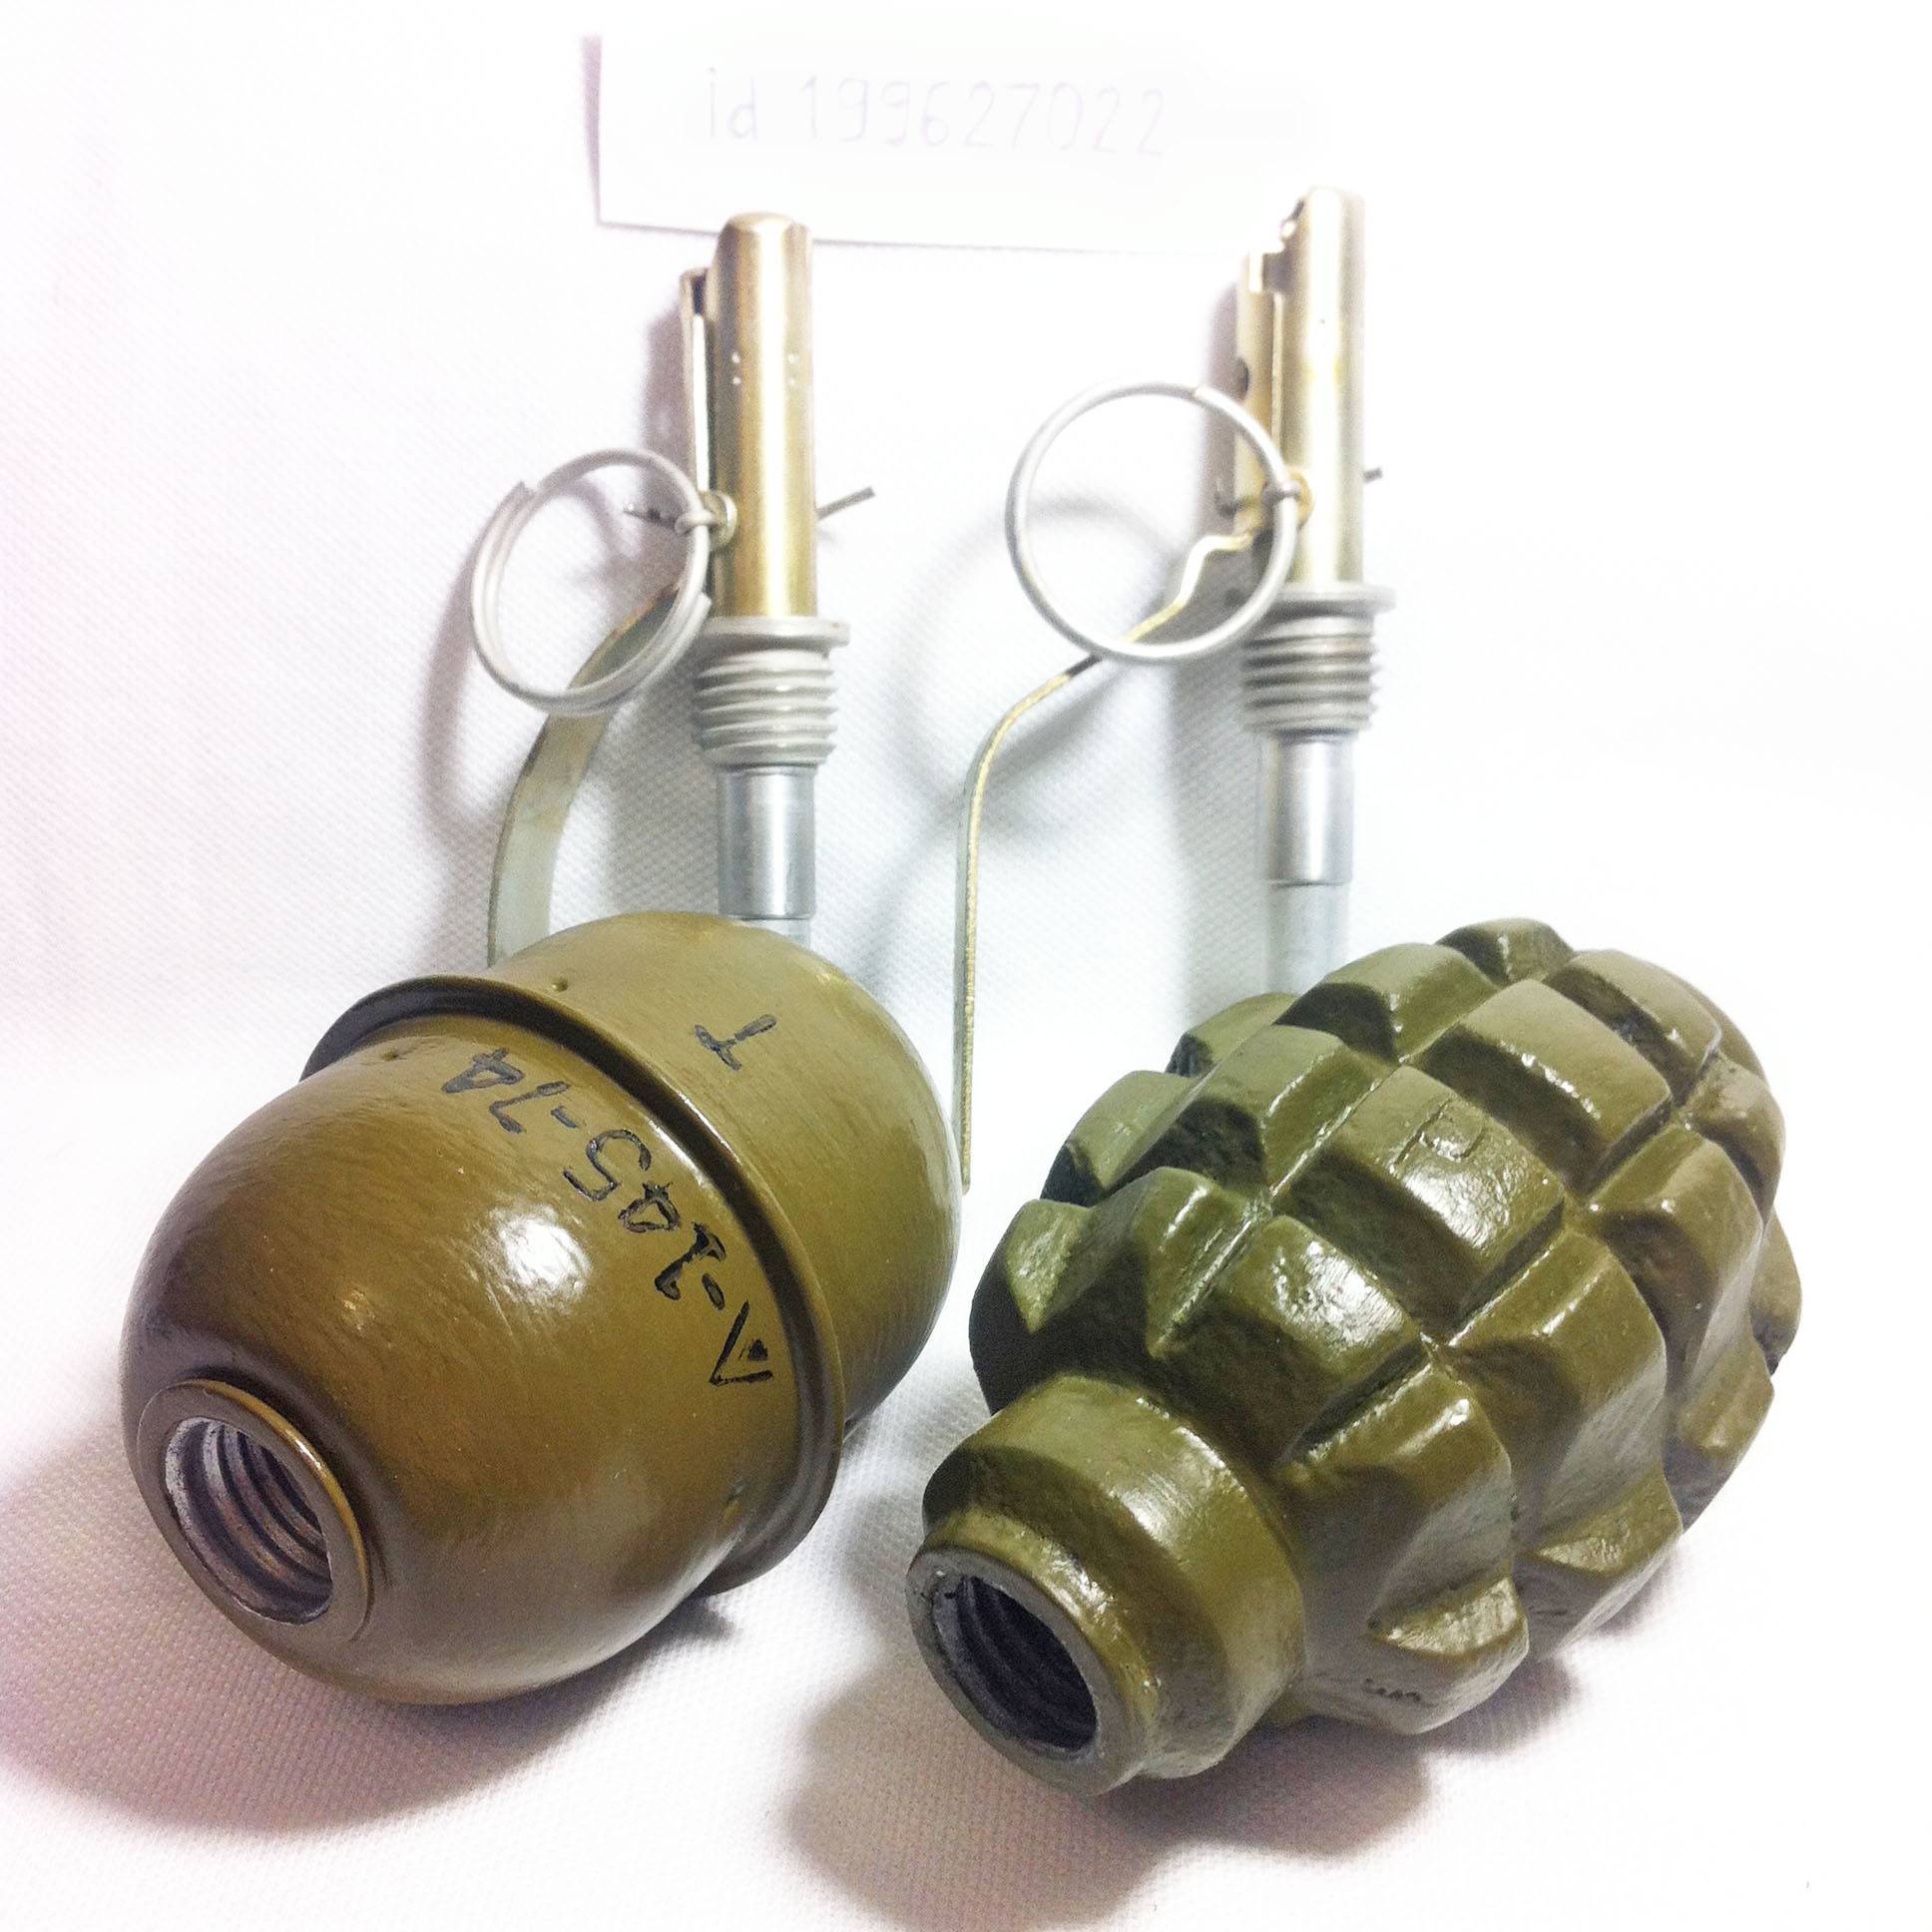 Осколочные боеприпасы — основное огневое средство против живой силы